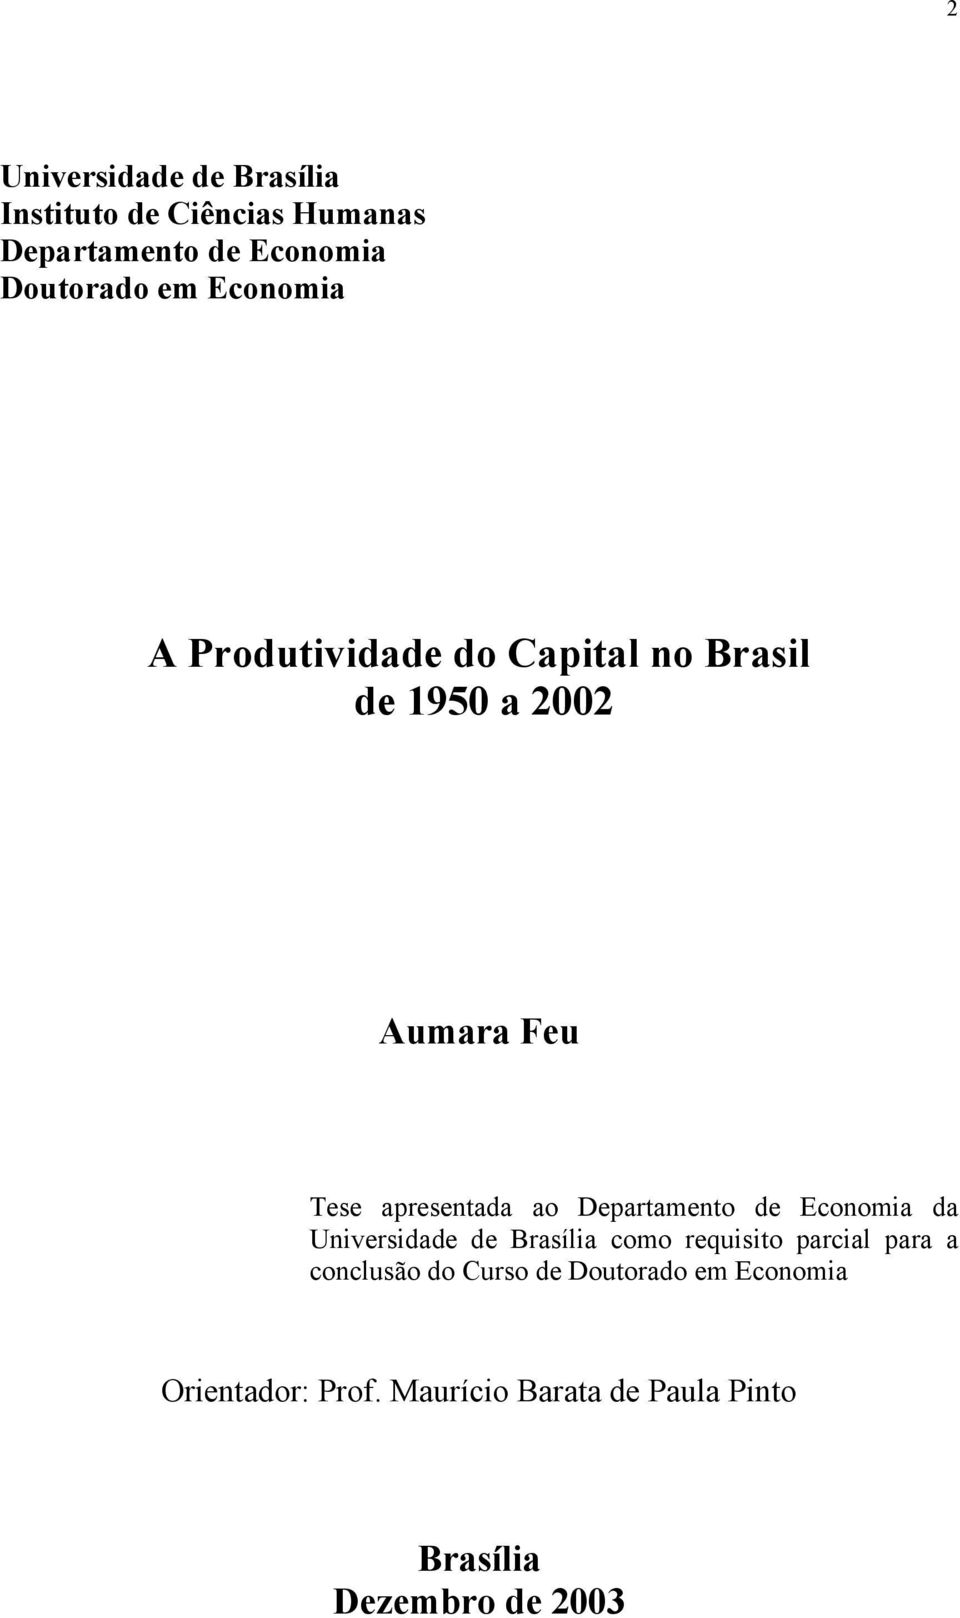 Deparameno de Economia da Universidade de Brasília como requisio parcial para a conclusão do